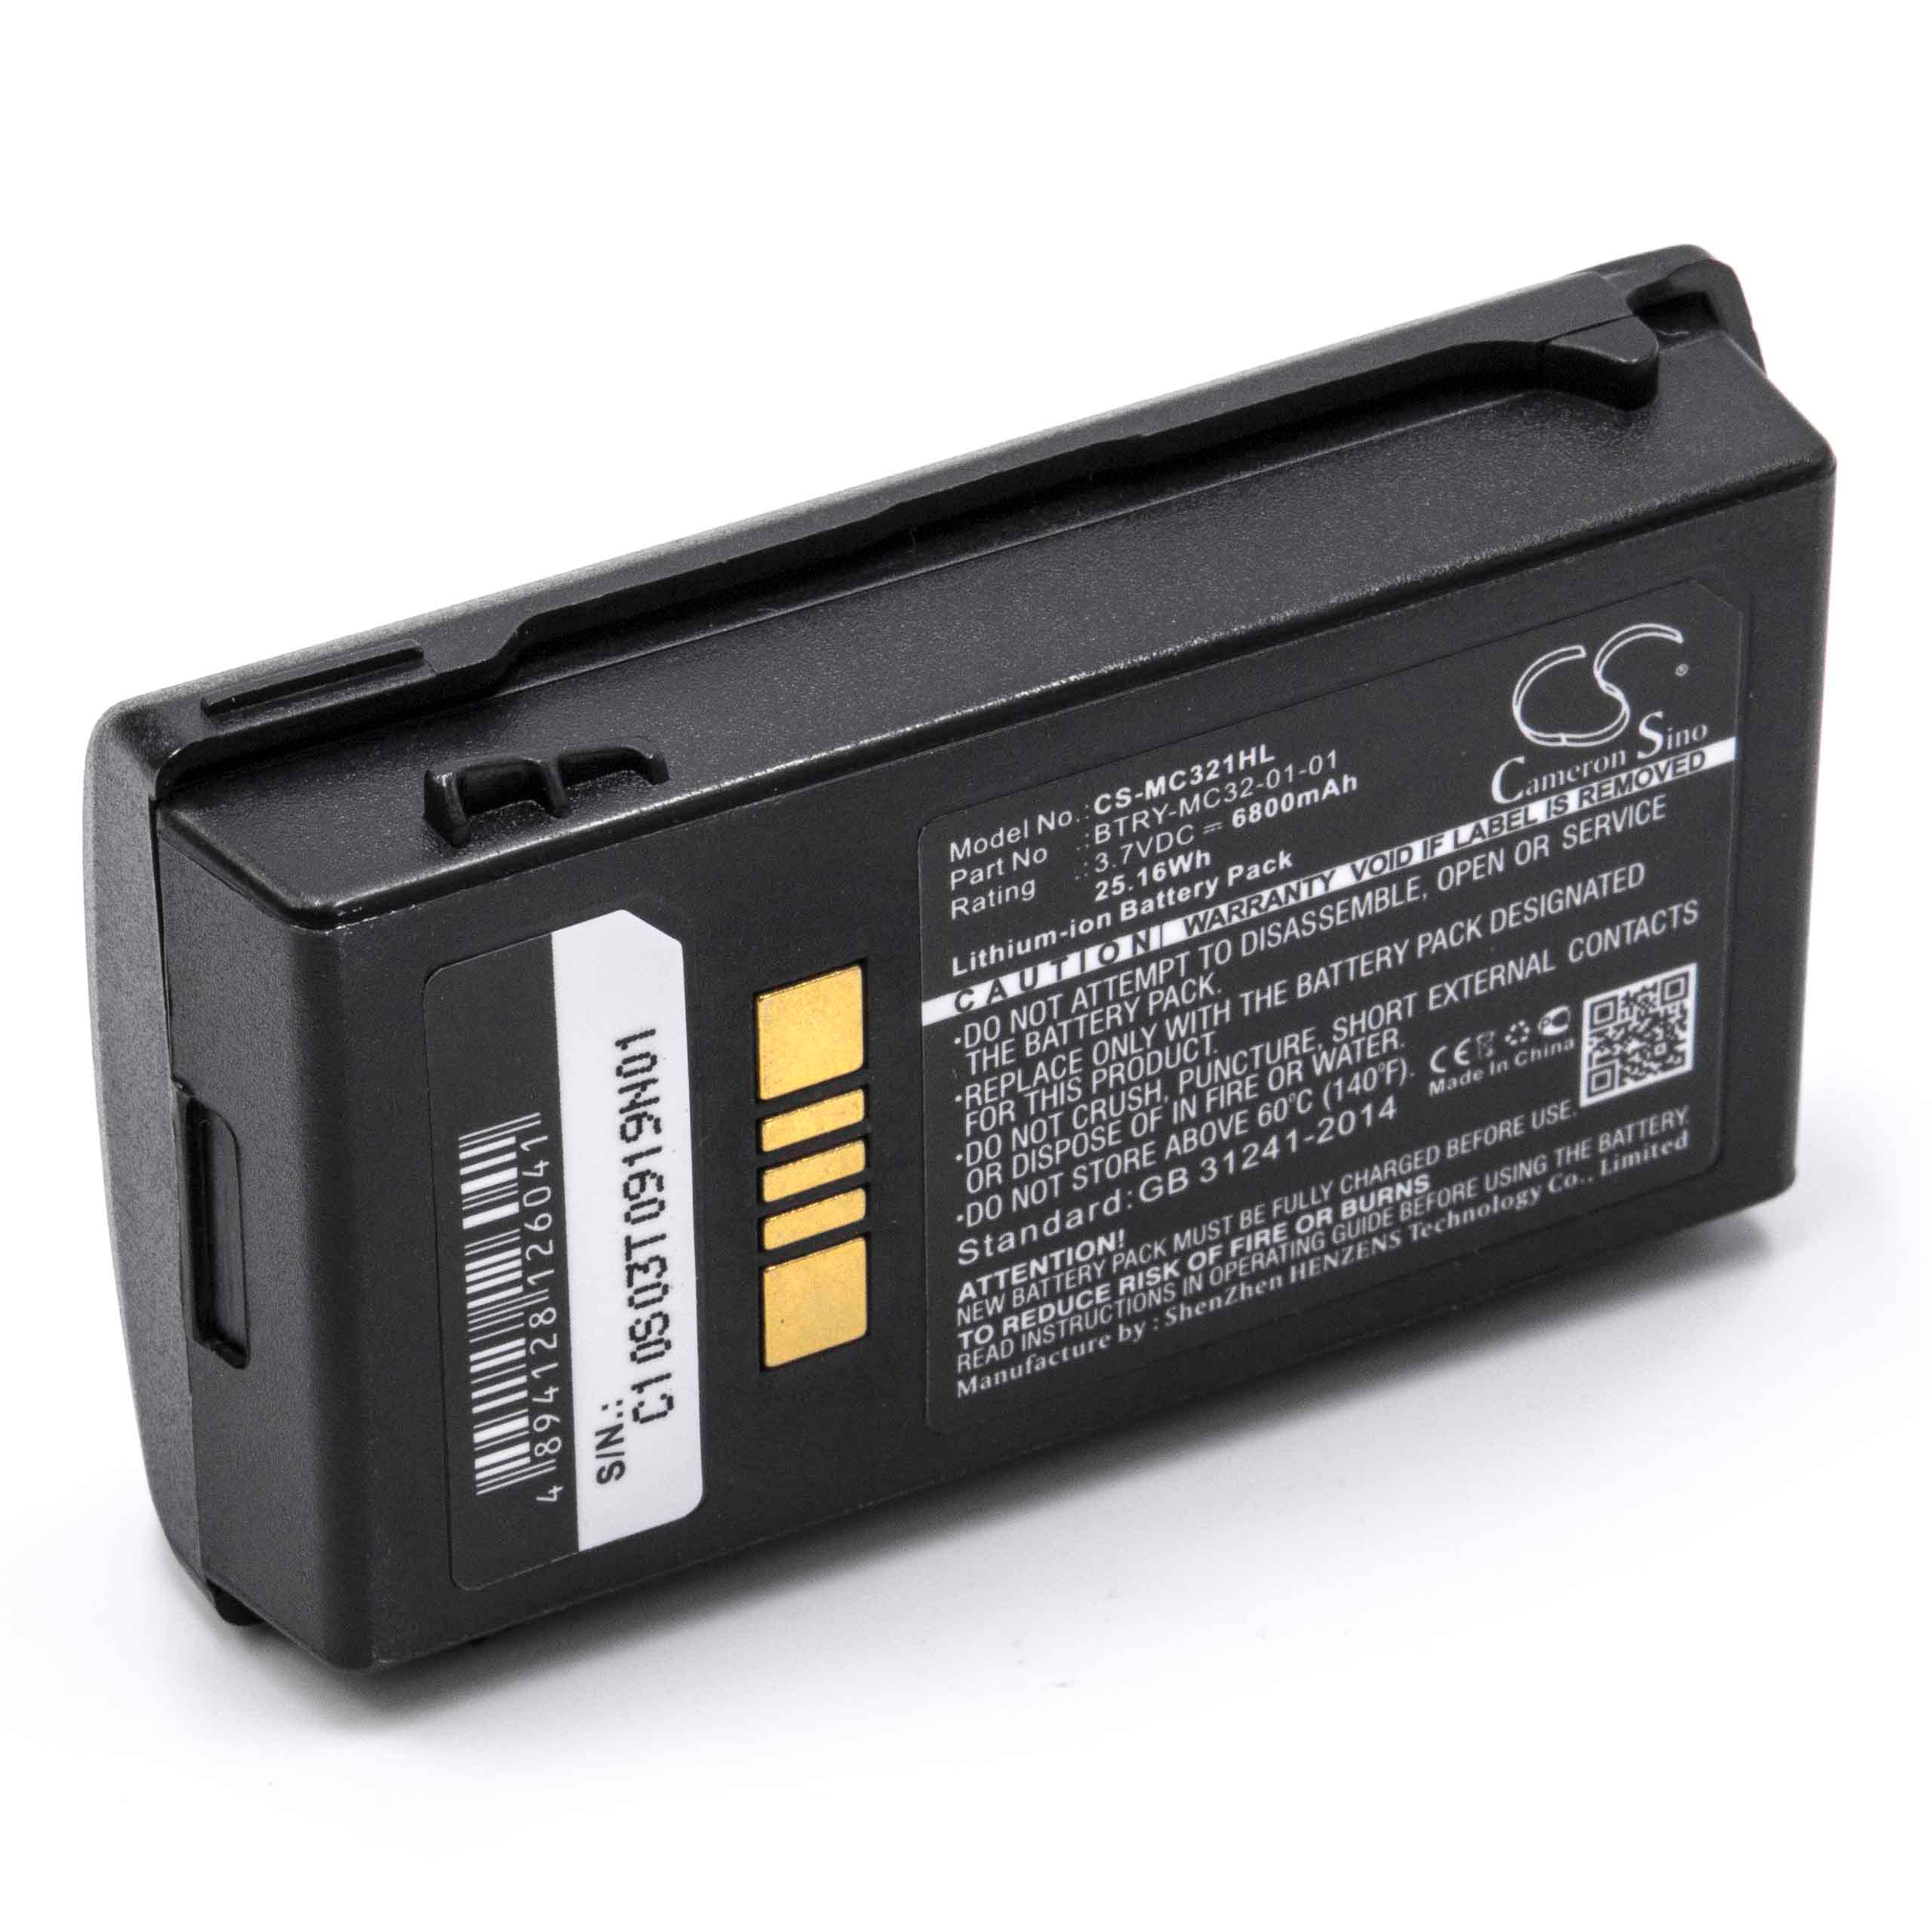 Akumulator do czytnika kodów kreskowych zamiennik Motorola BTRY-MC32-01-01 - 6800 mAh 3,7 V Li-Ion